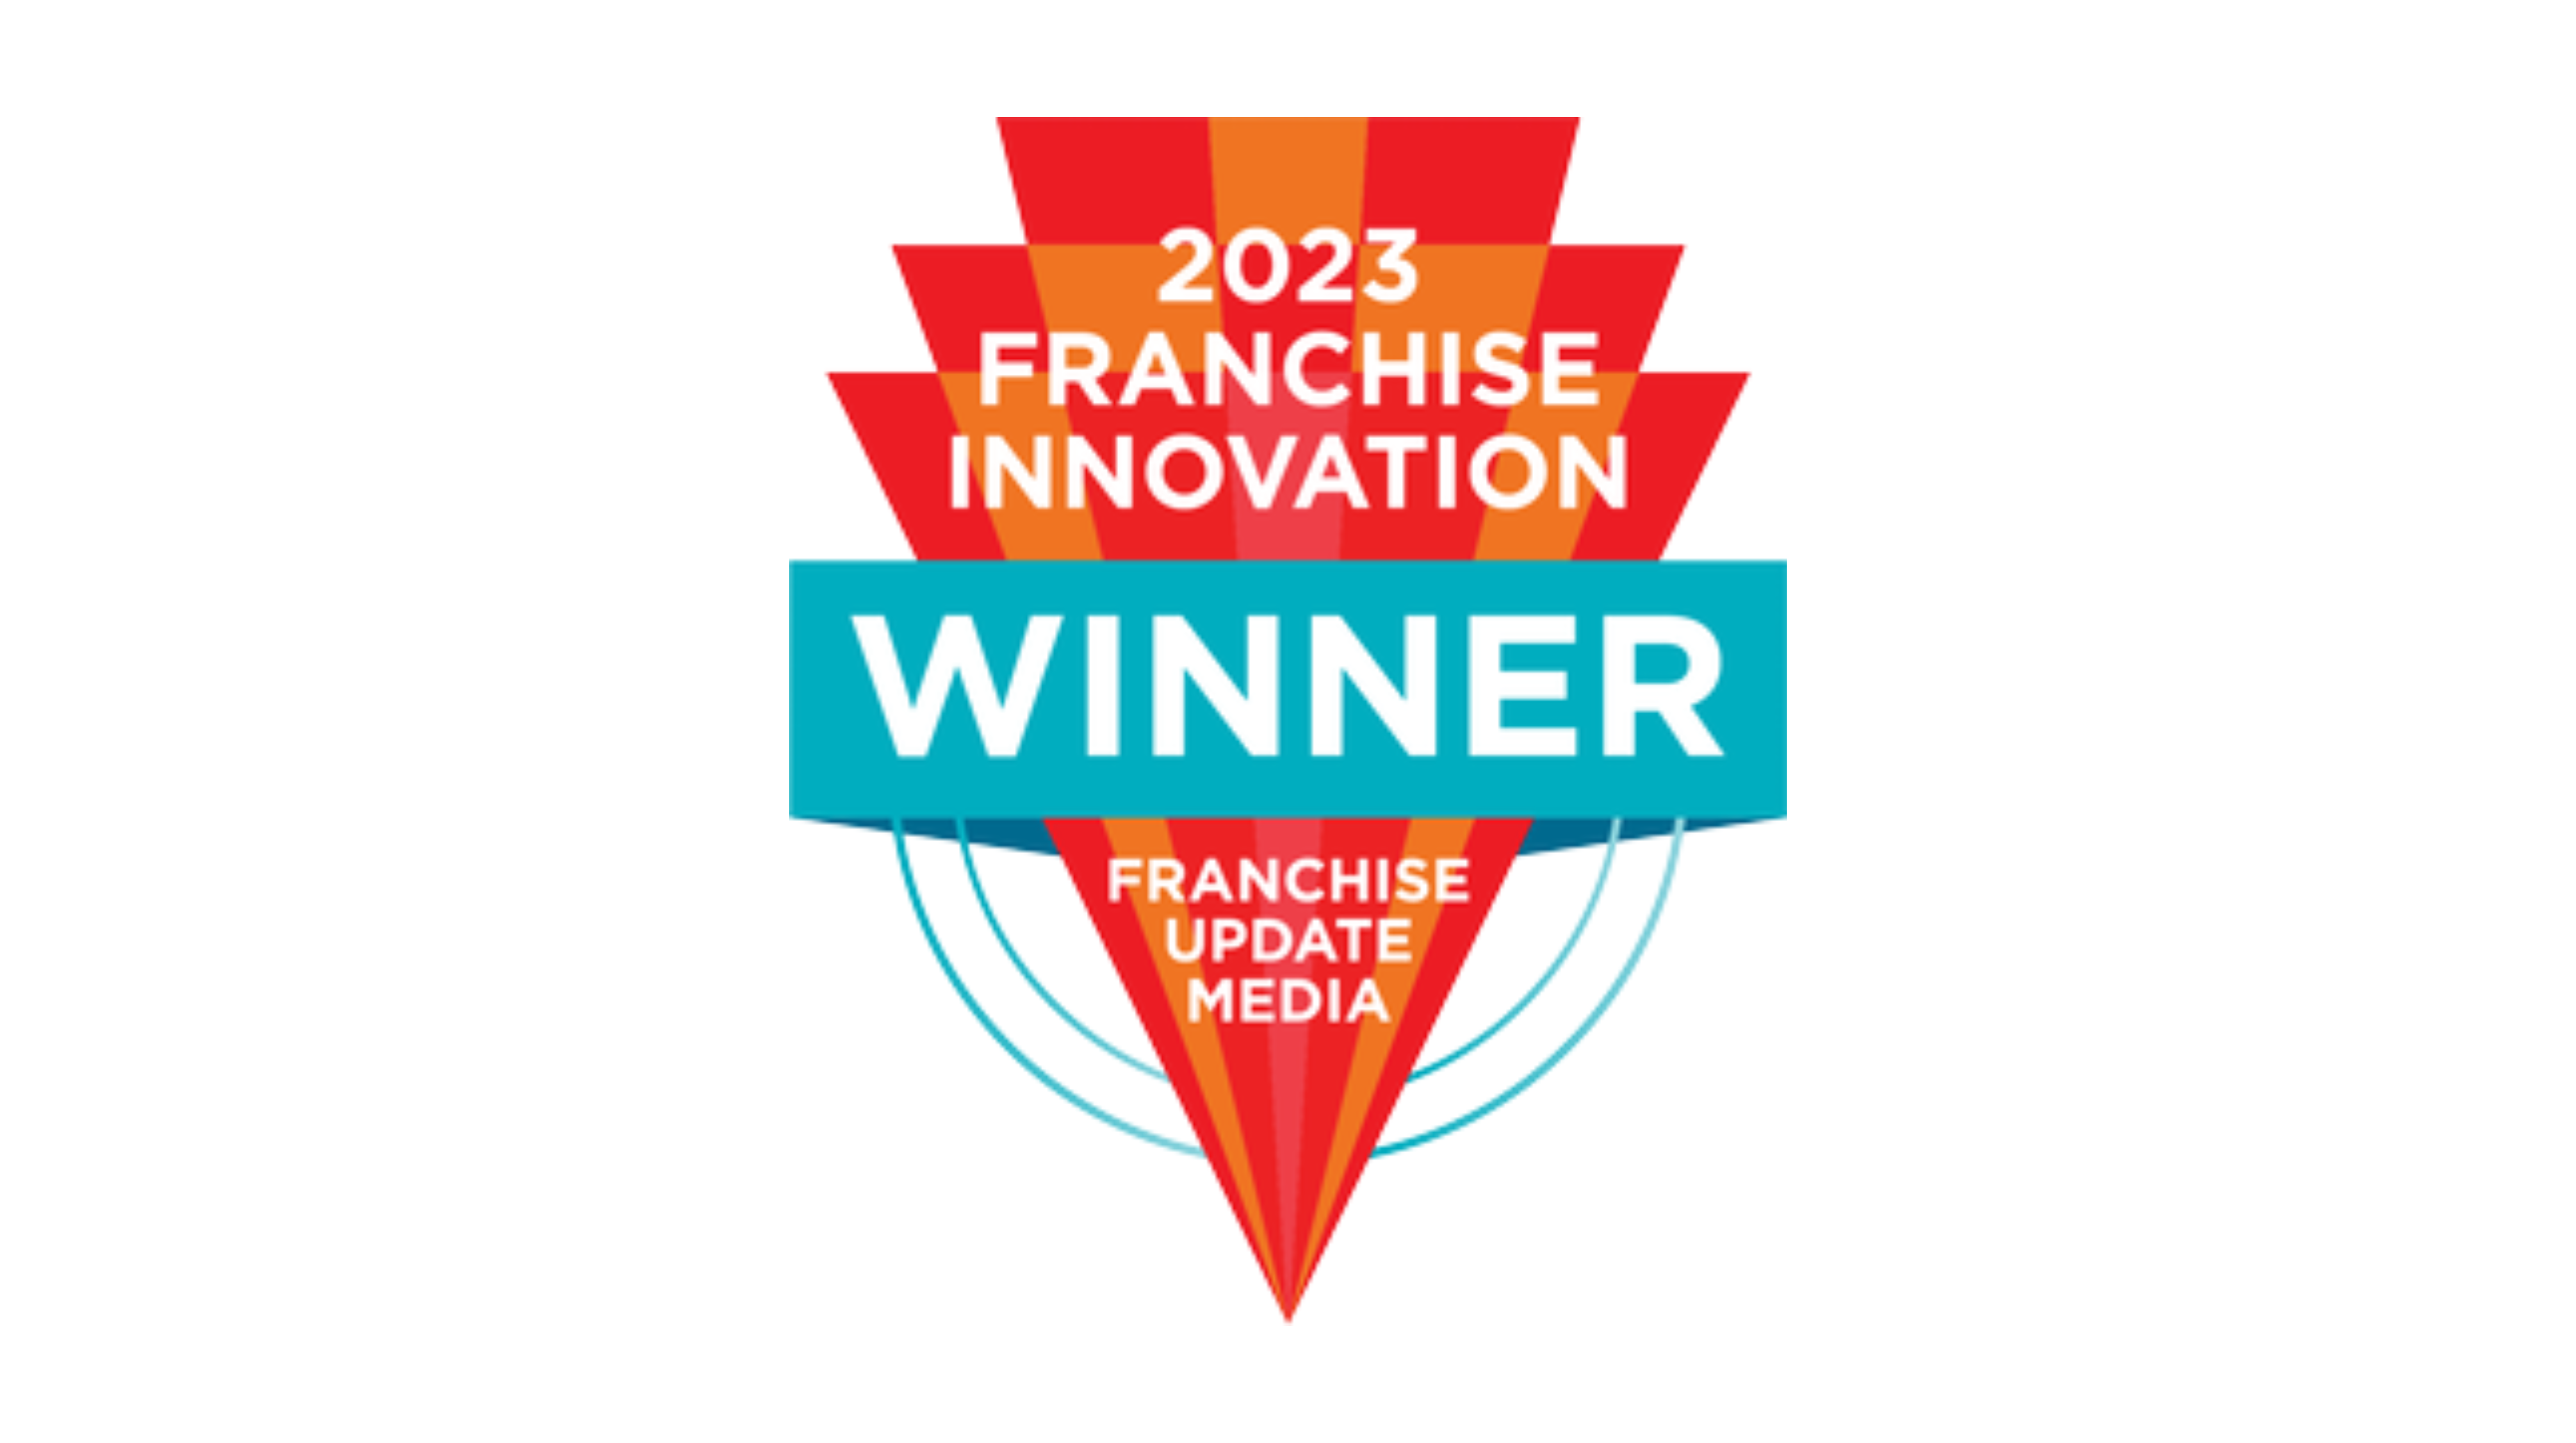 Franchise Innovation Winner badge